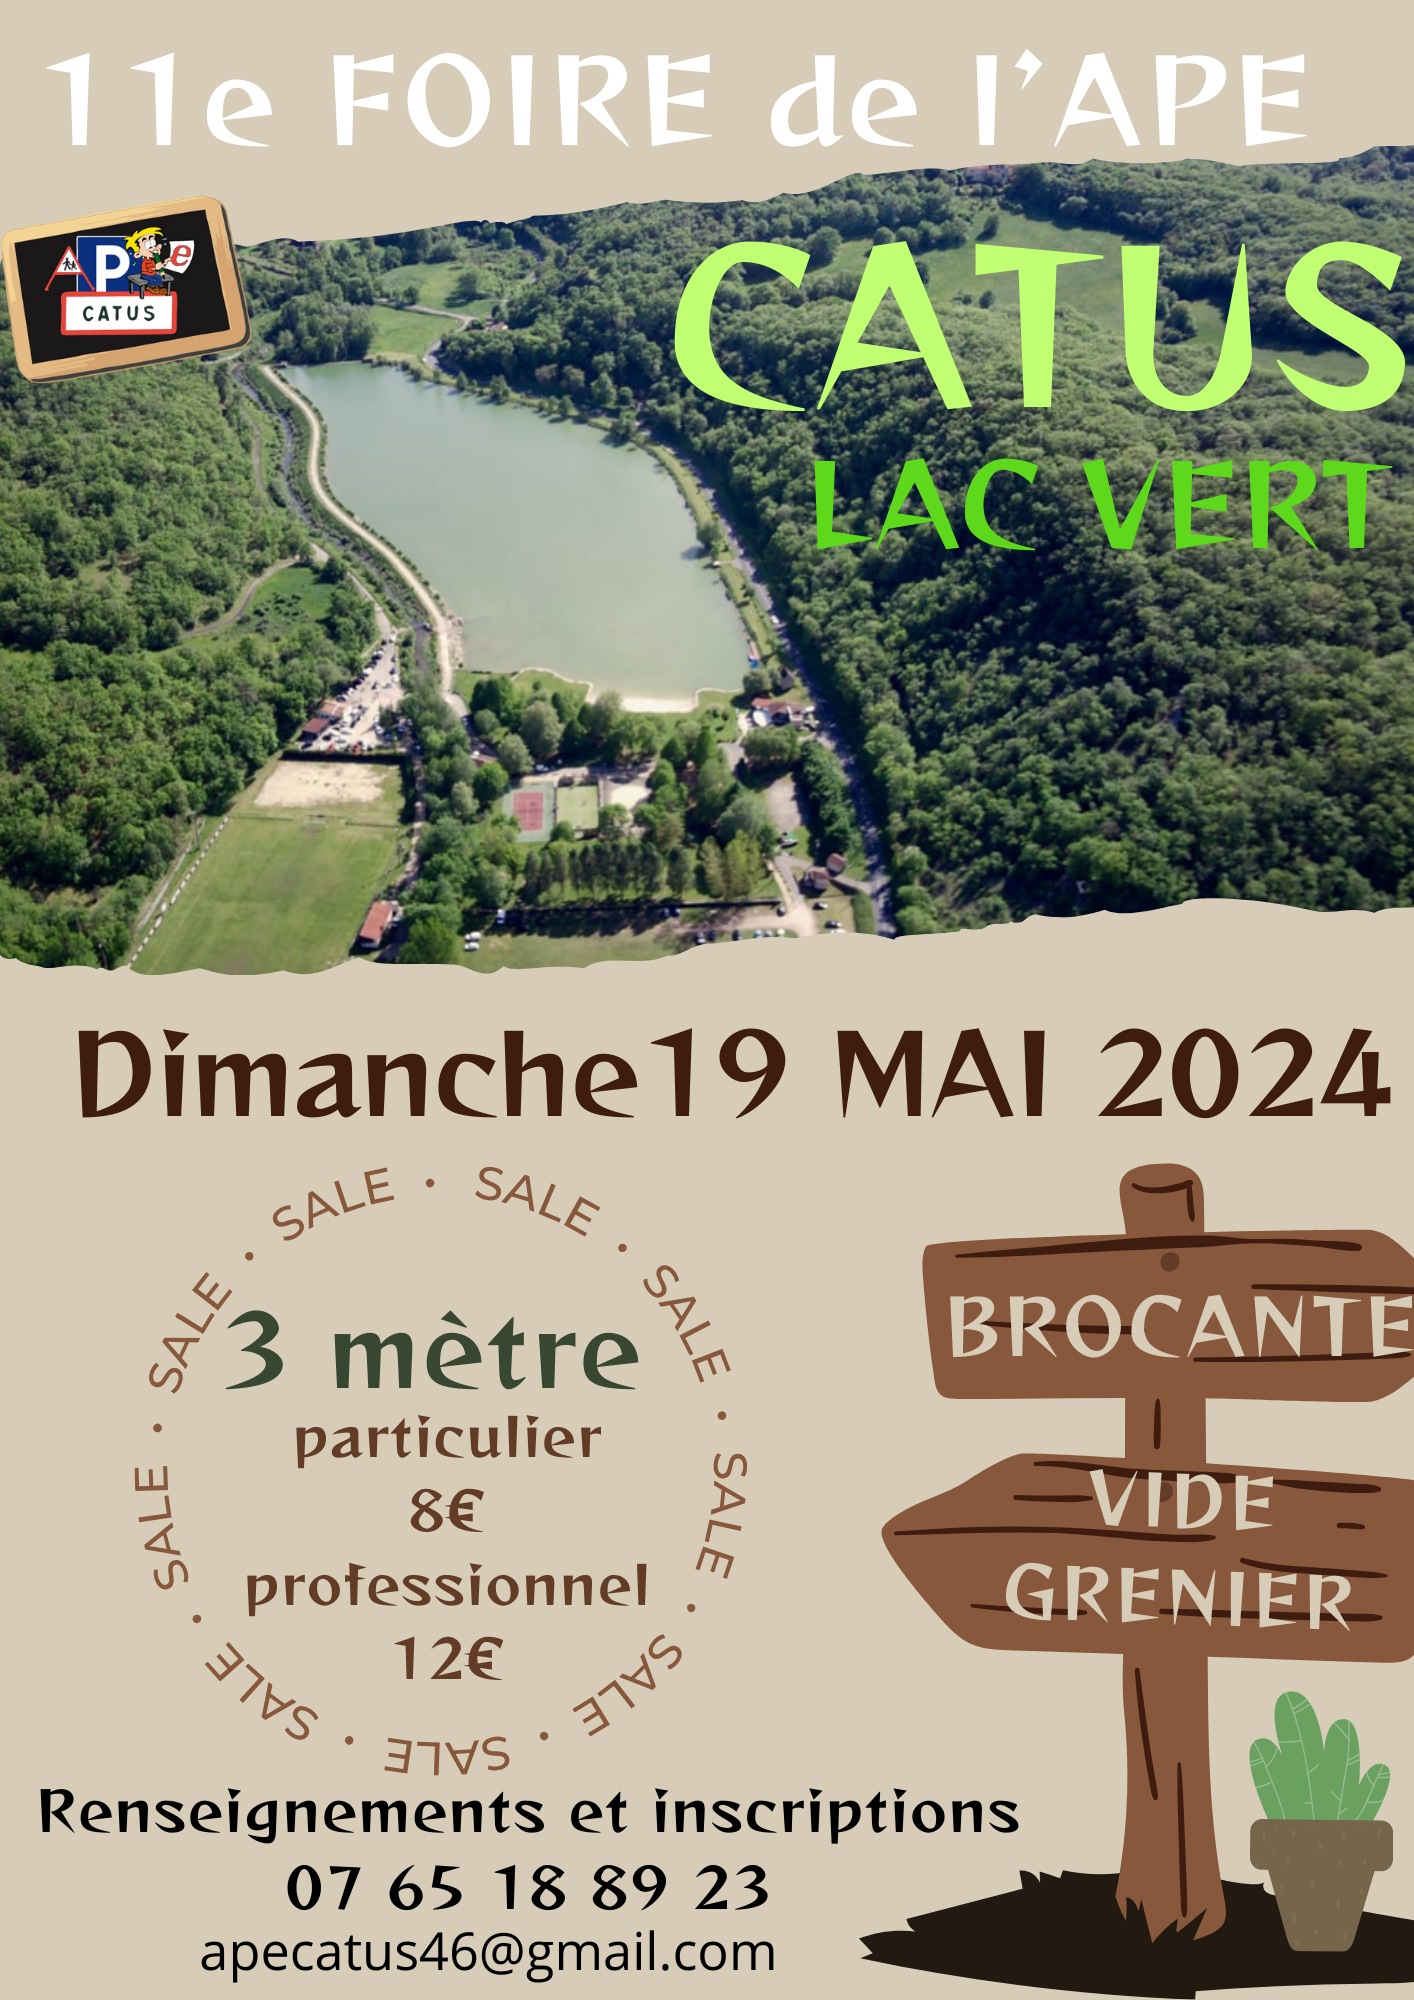 Foire au lac : vide-greniers et brocante à Catus Le 19 mai 2024